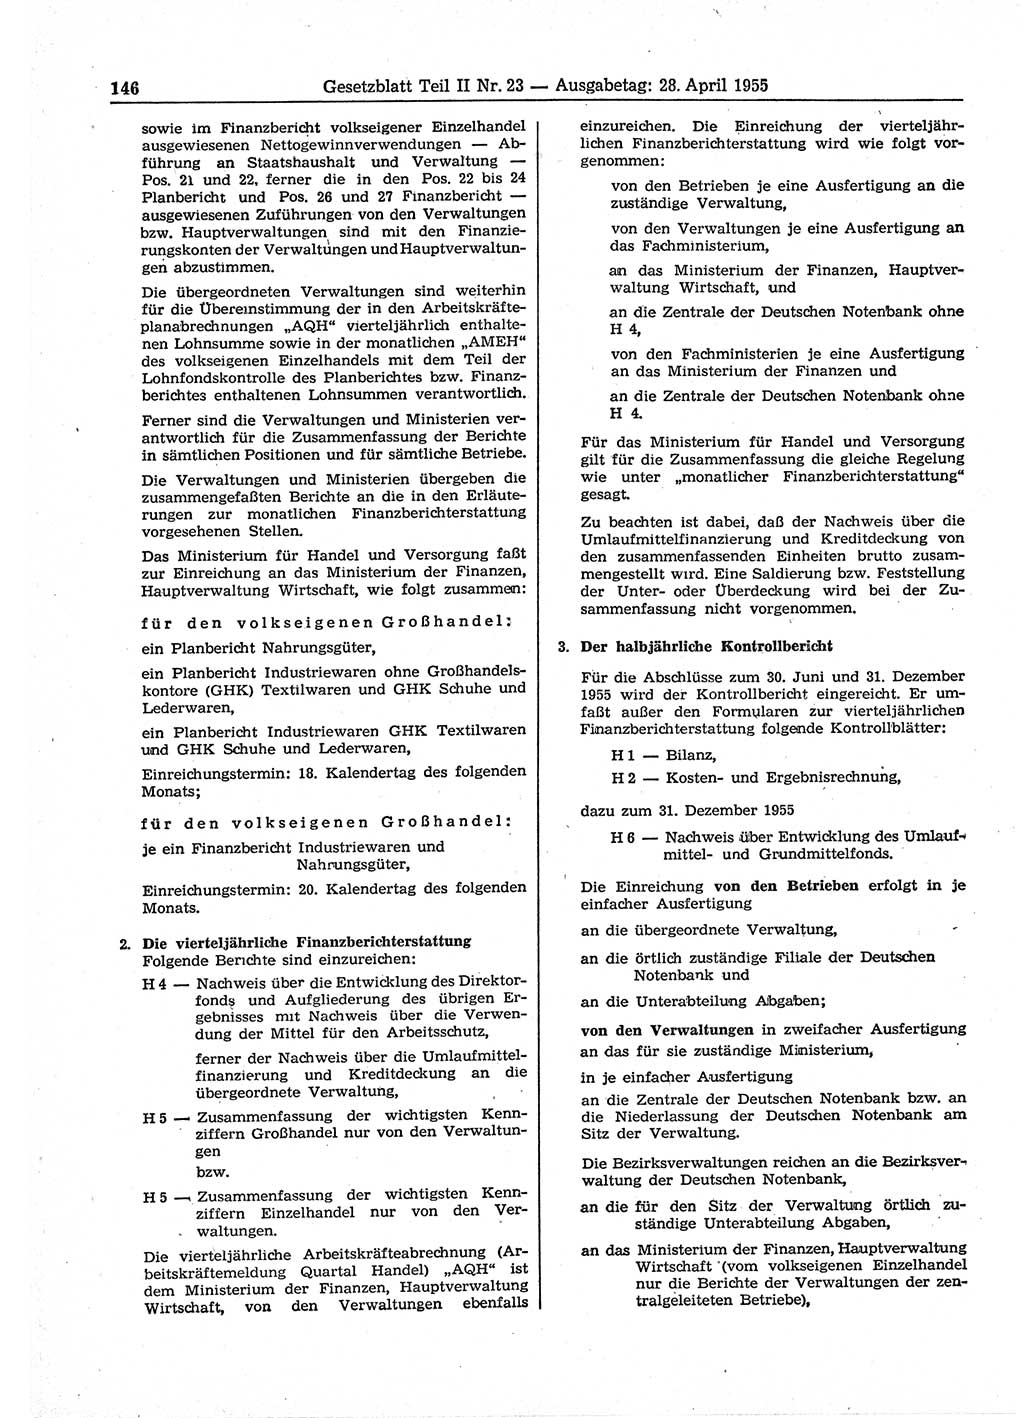 Gesetzblatt (GBl.) der Deutschen Demokratischen Republik (DDR) Teil ⅠⅠ 1955, Seite 146 (GBl. DDR ⅠⅠ 1955, S. 146)